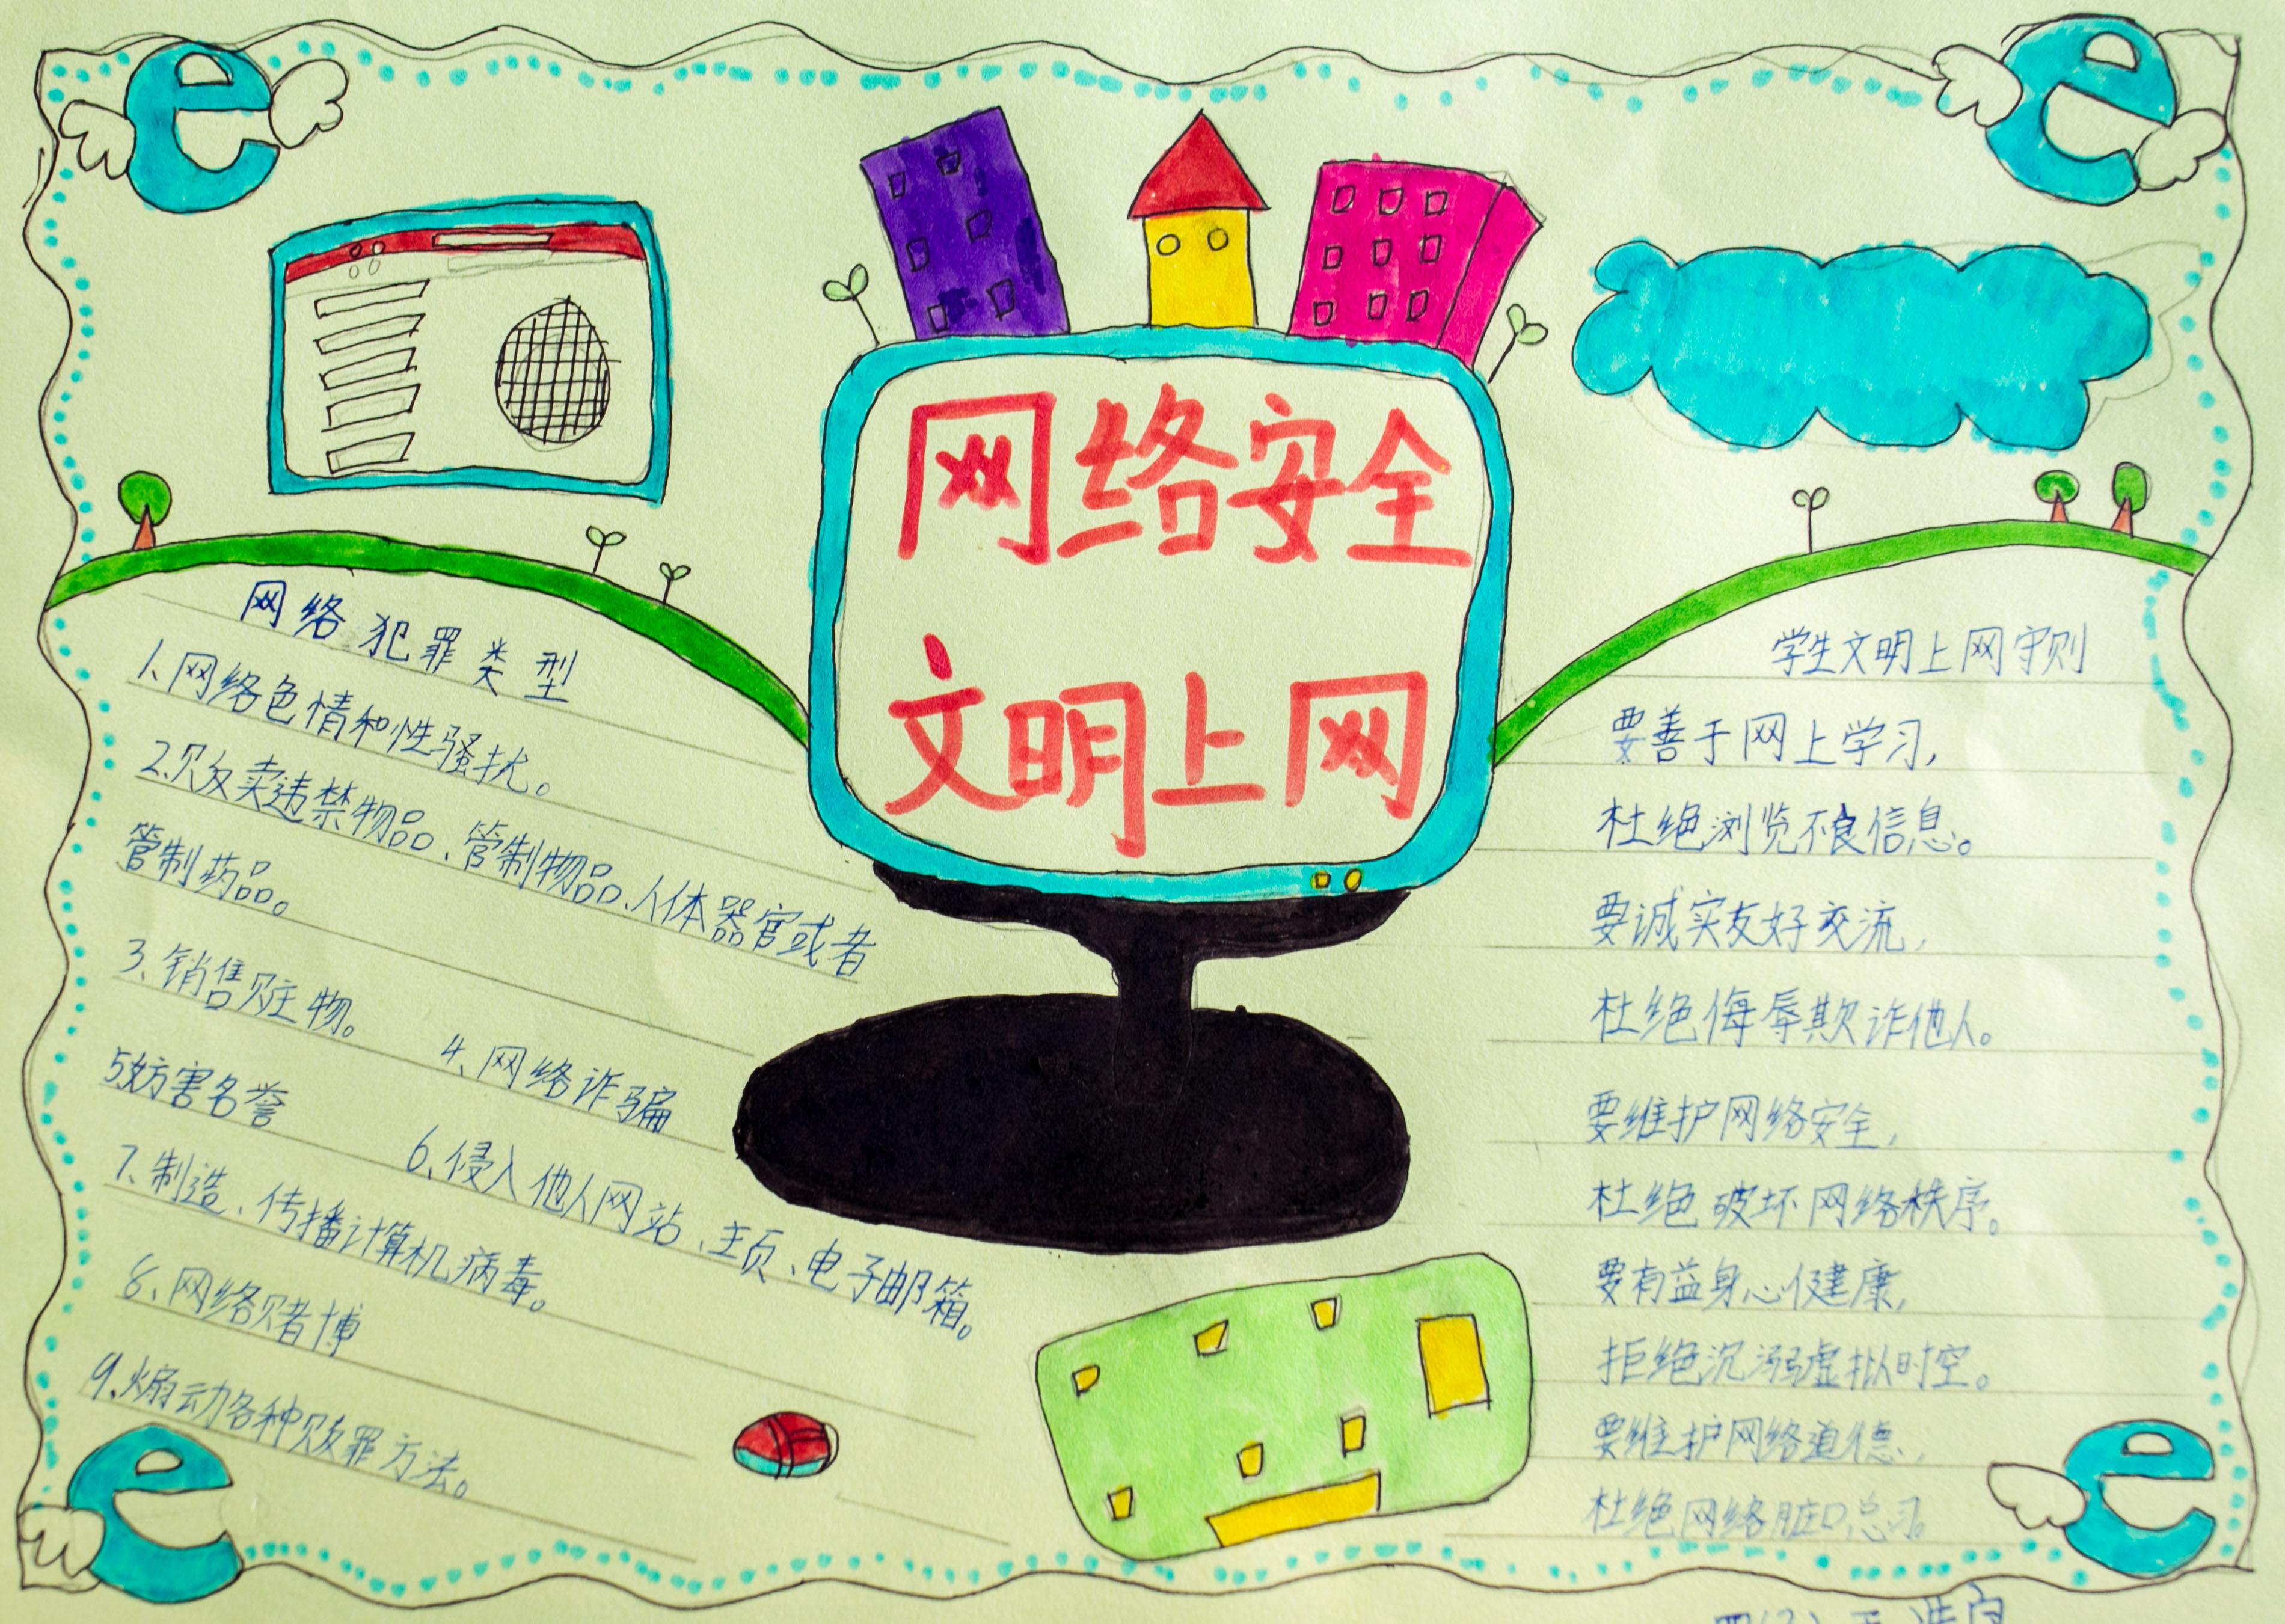 9月15日,呼和浩特市玉泉区恒昌店小学学生绘制的《网络安全》手抄报